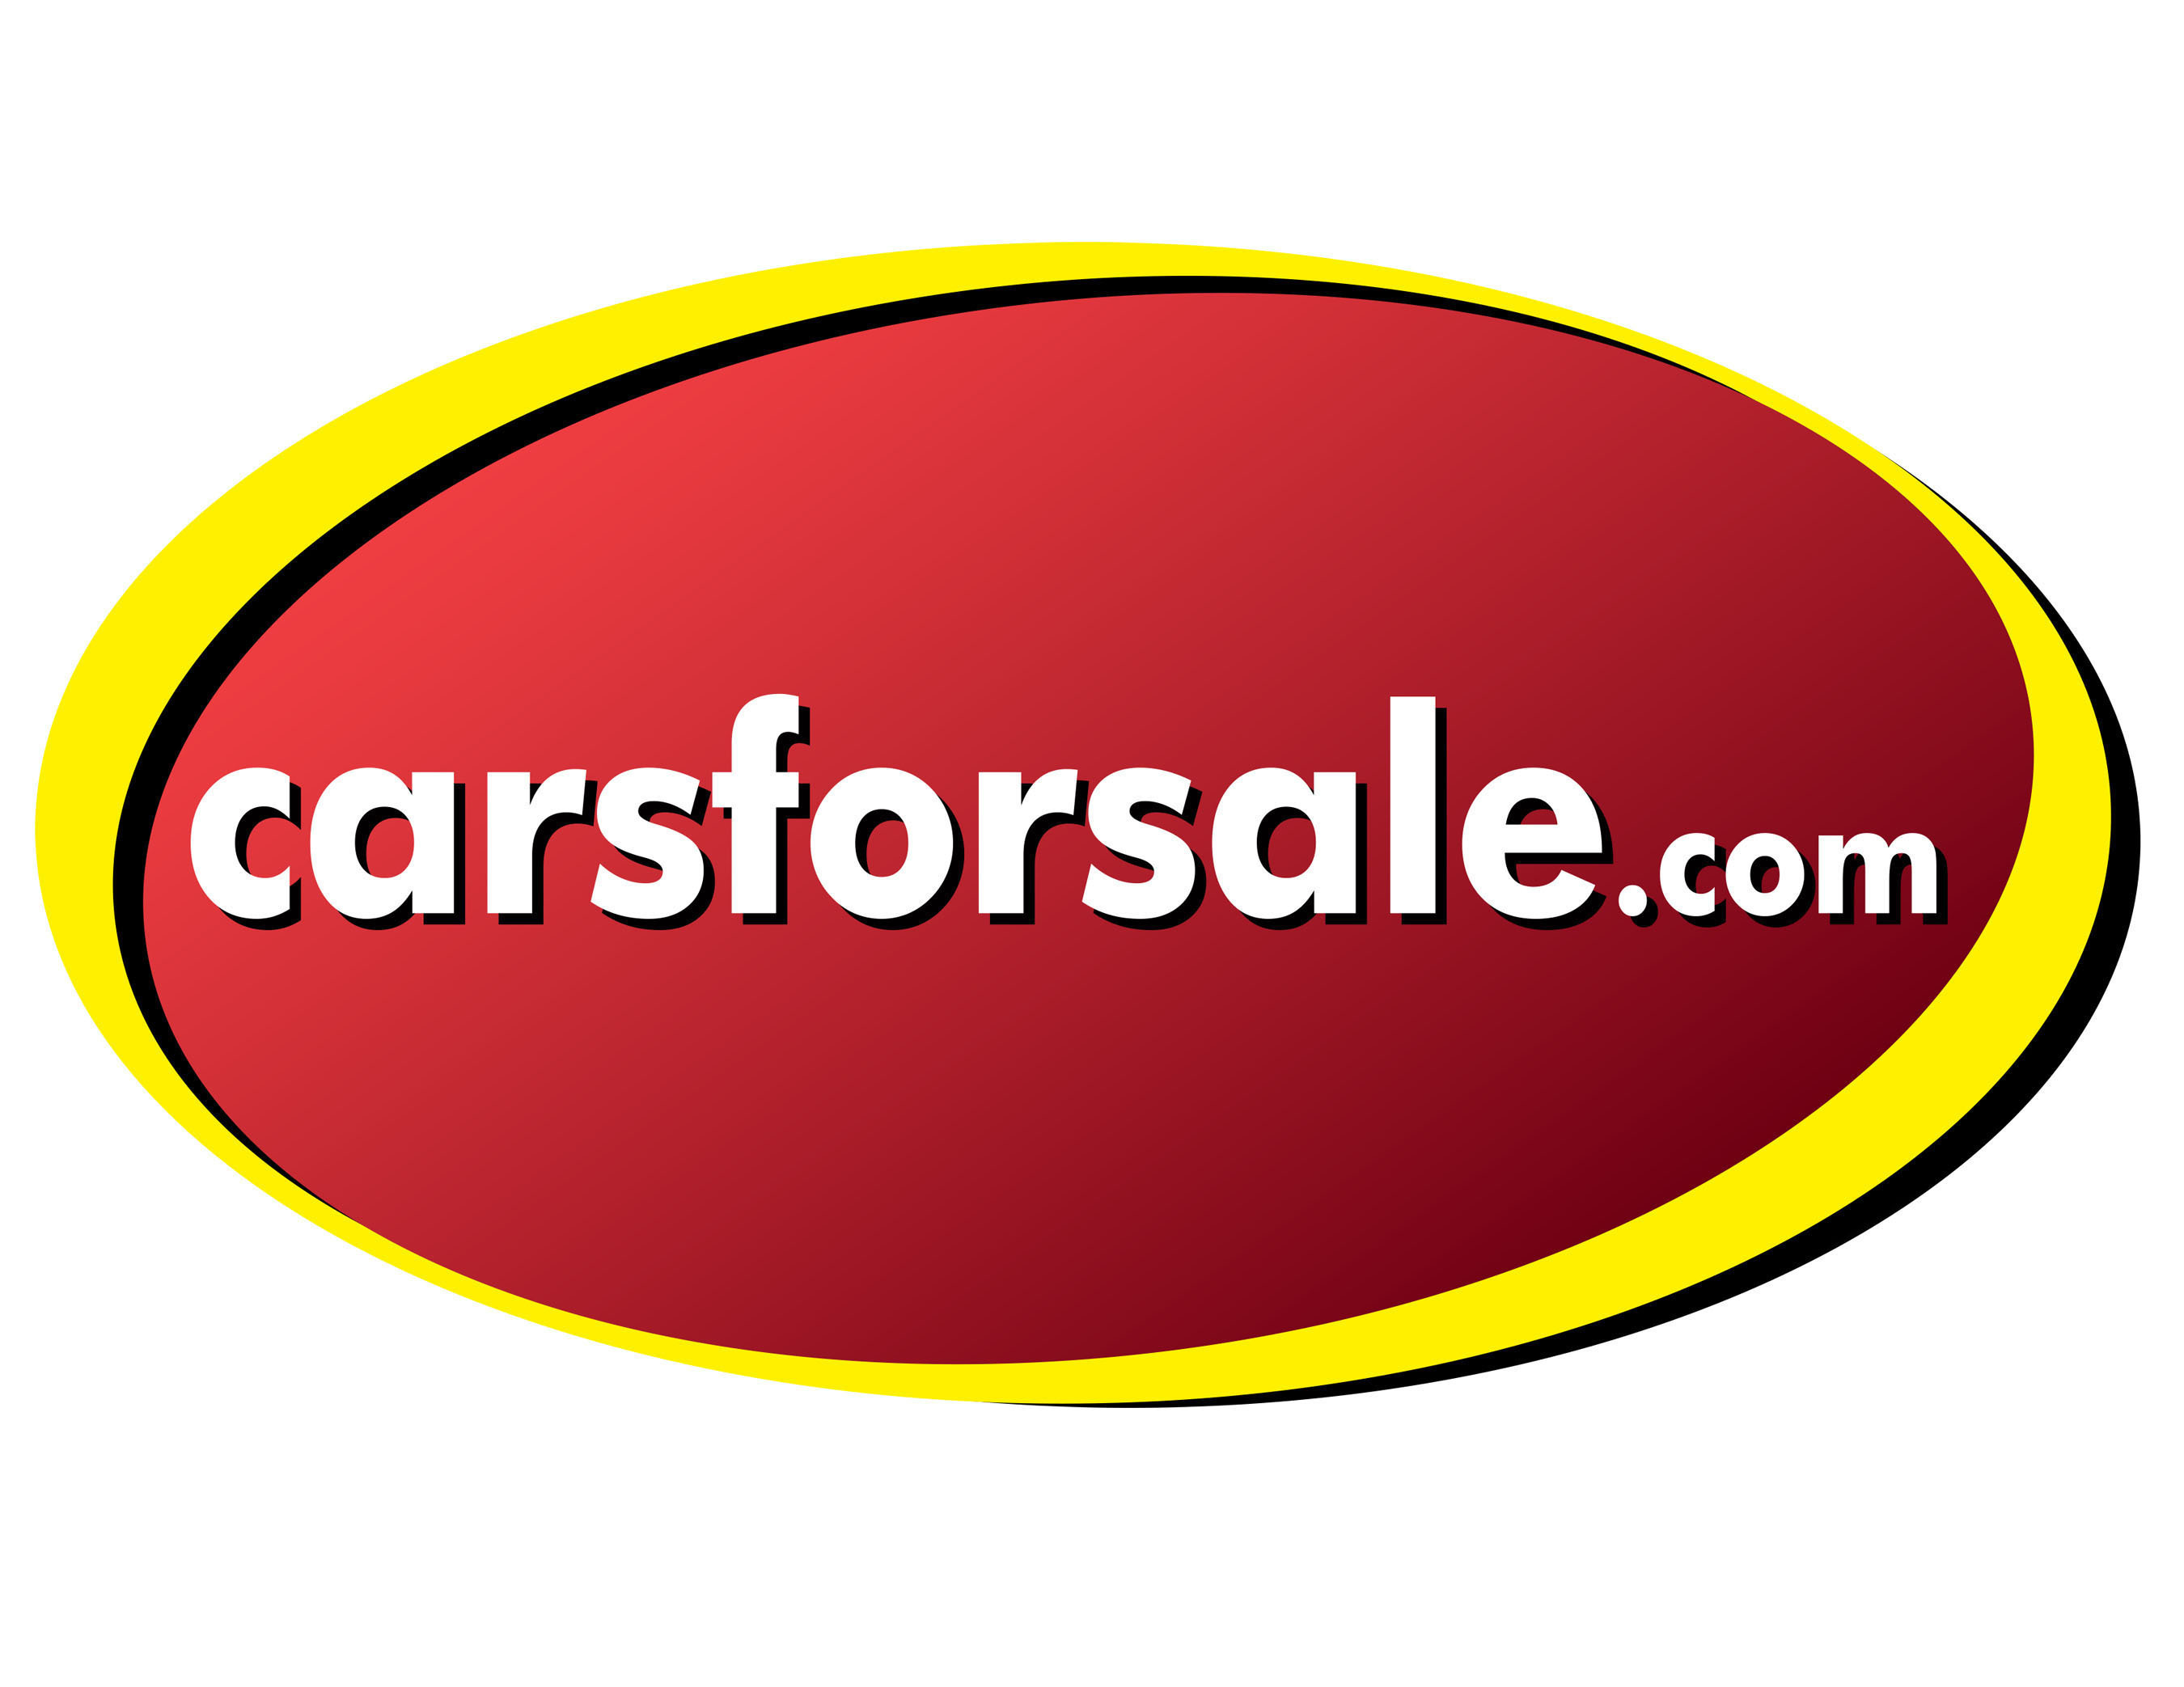 Carsforsale.com Logo.